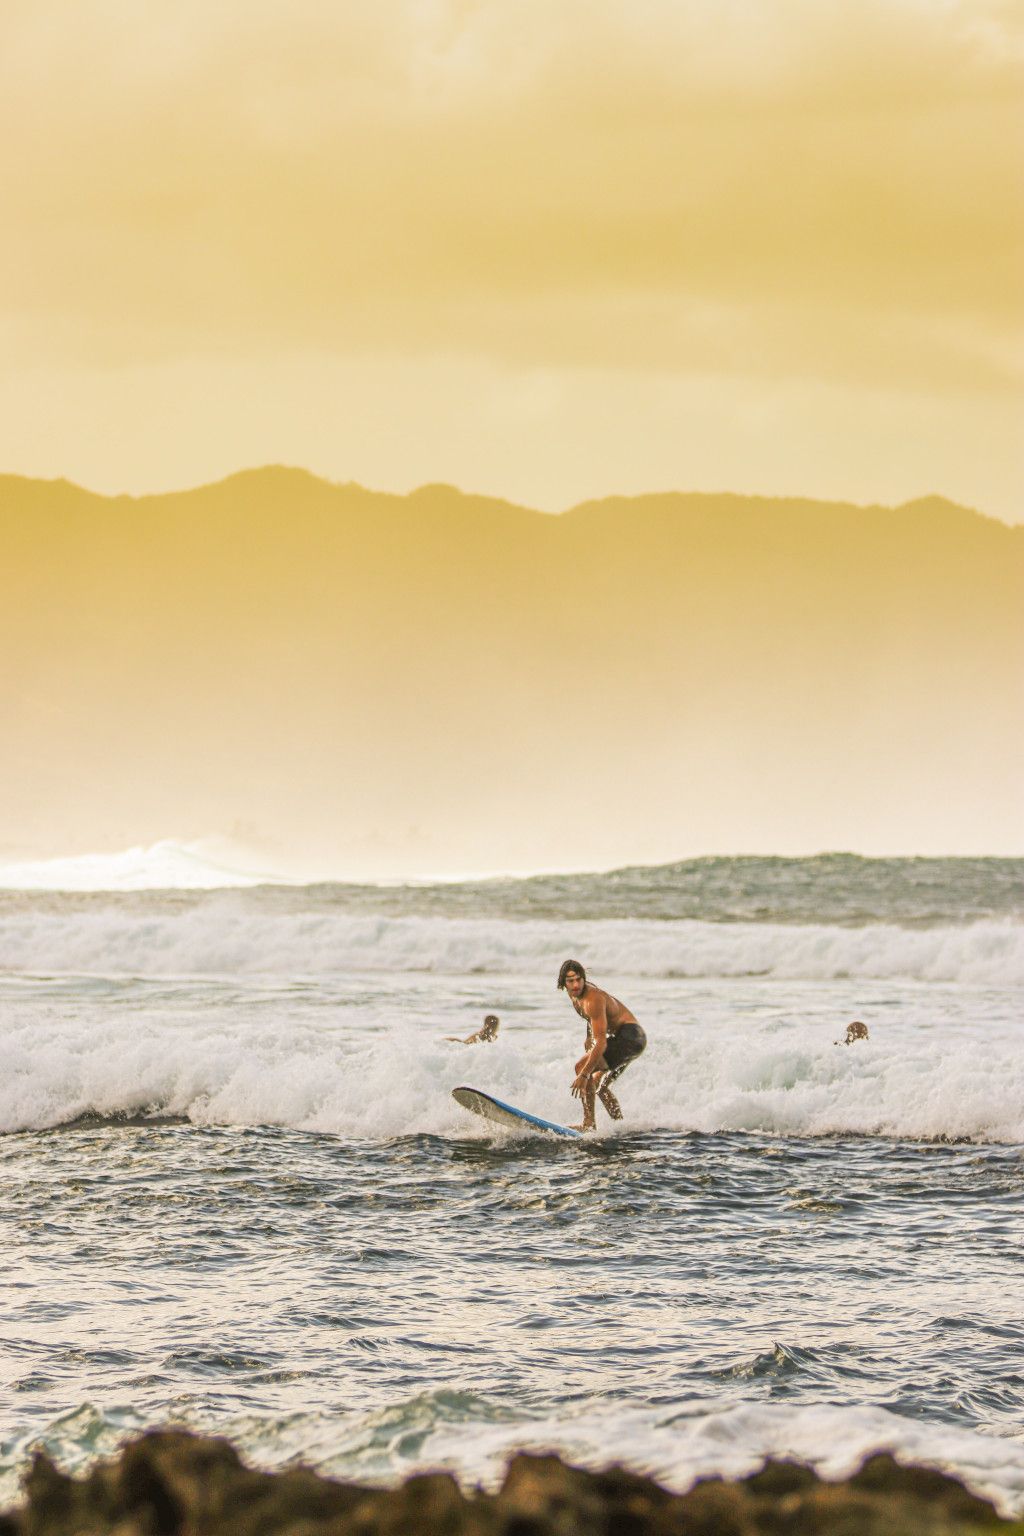 Das Bild zeigt einen Surfer im Meer vor Hawaii als Sinnbild für den Spirit of Aloha